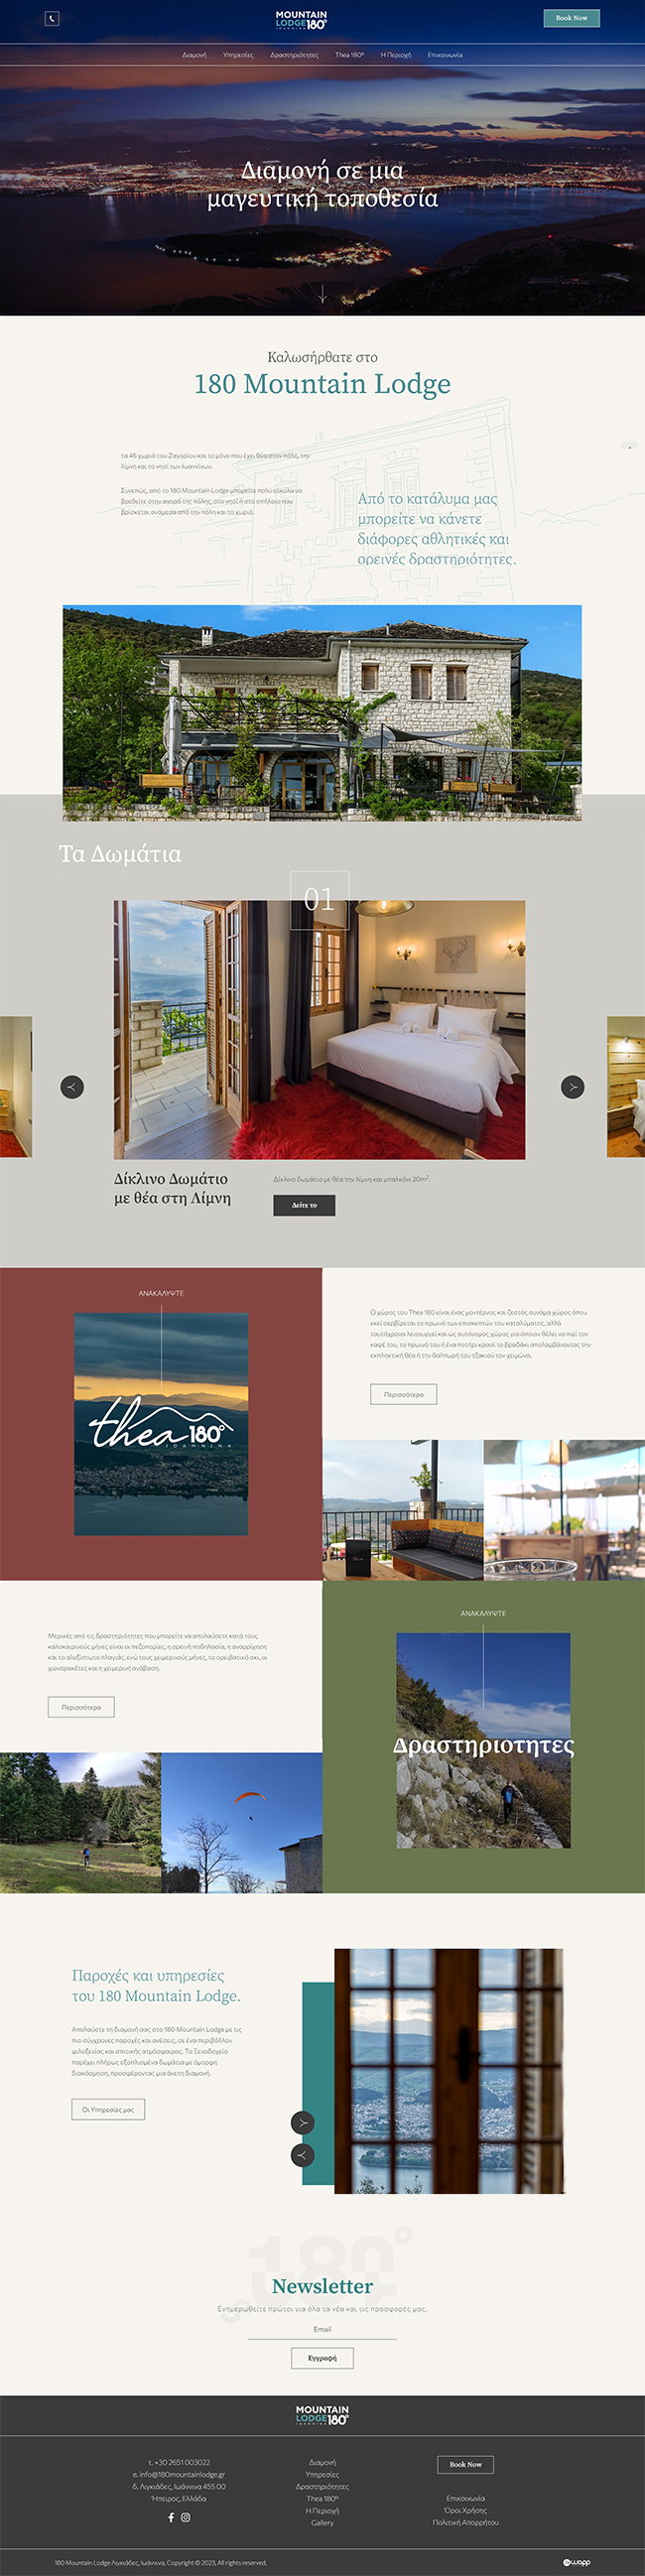 Κατασκευή responsive ιστοσελίδας για το Ξενοδοχείο 180 Mountain Lodge στα Ιωάννινα.